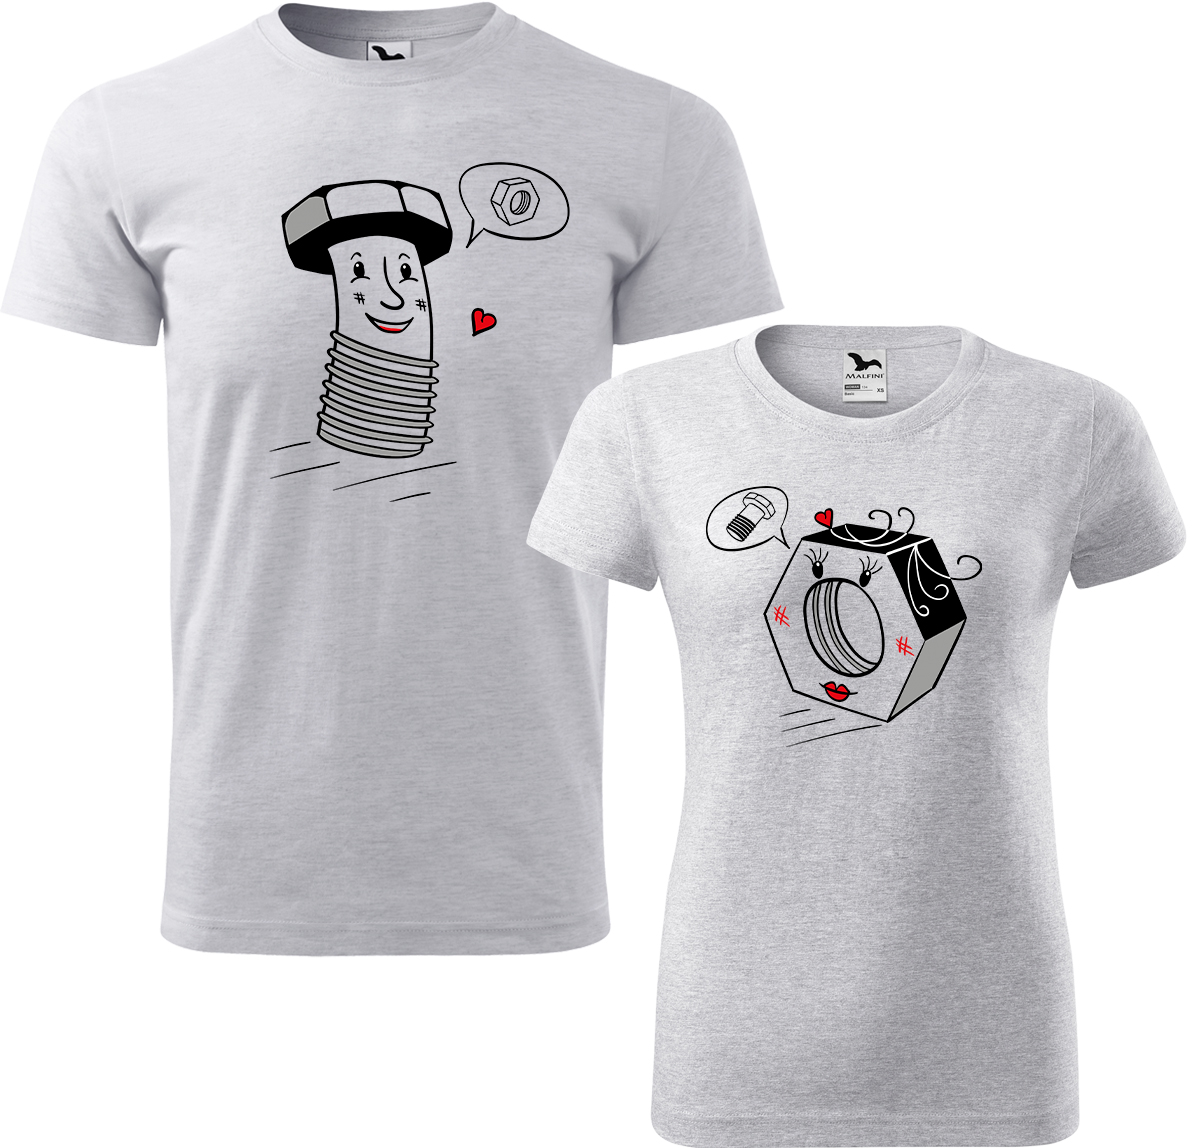 Trička pro páry - Šroubek a matička Barva: Světle šedý melír (03), Velikost dámské tričko: L, Velikost pánské tričko: 2XL